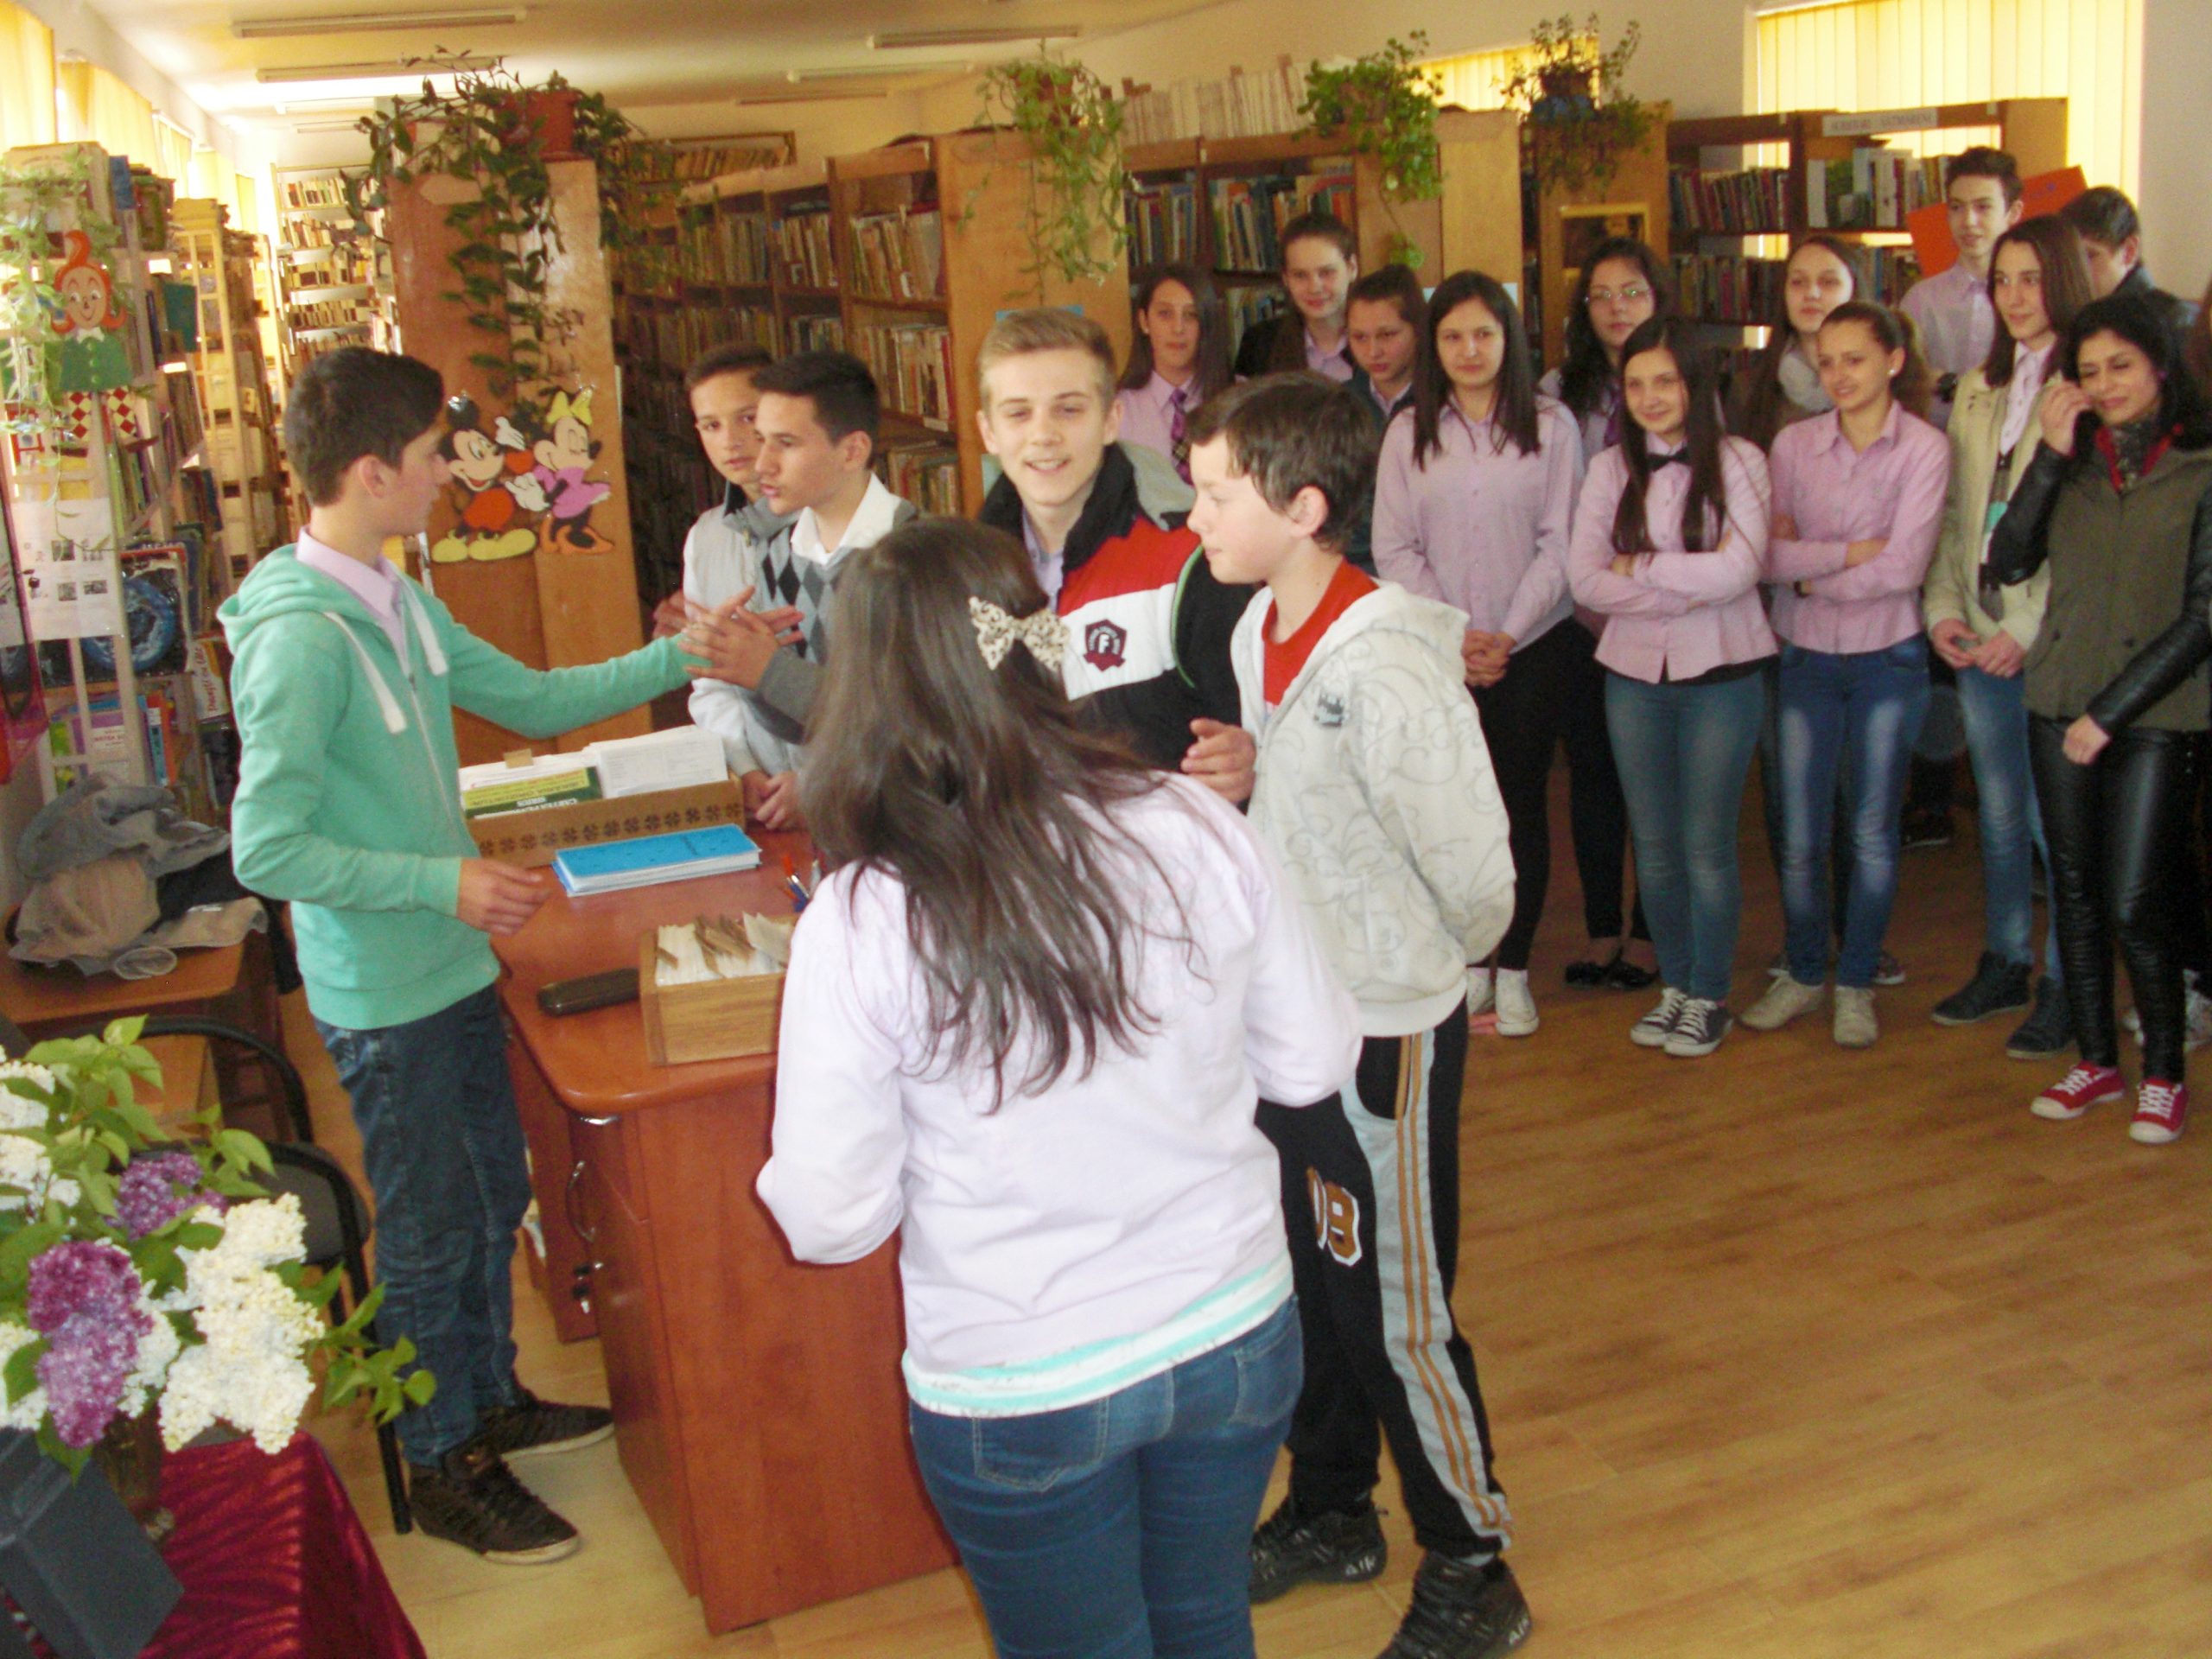 La manifestări au fost invitați elevii clasei a VIII-a A de la Școala Gimnazială Tășnad, elevi pregătiți de profesoara Adriana Hărdălău